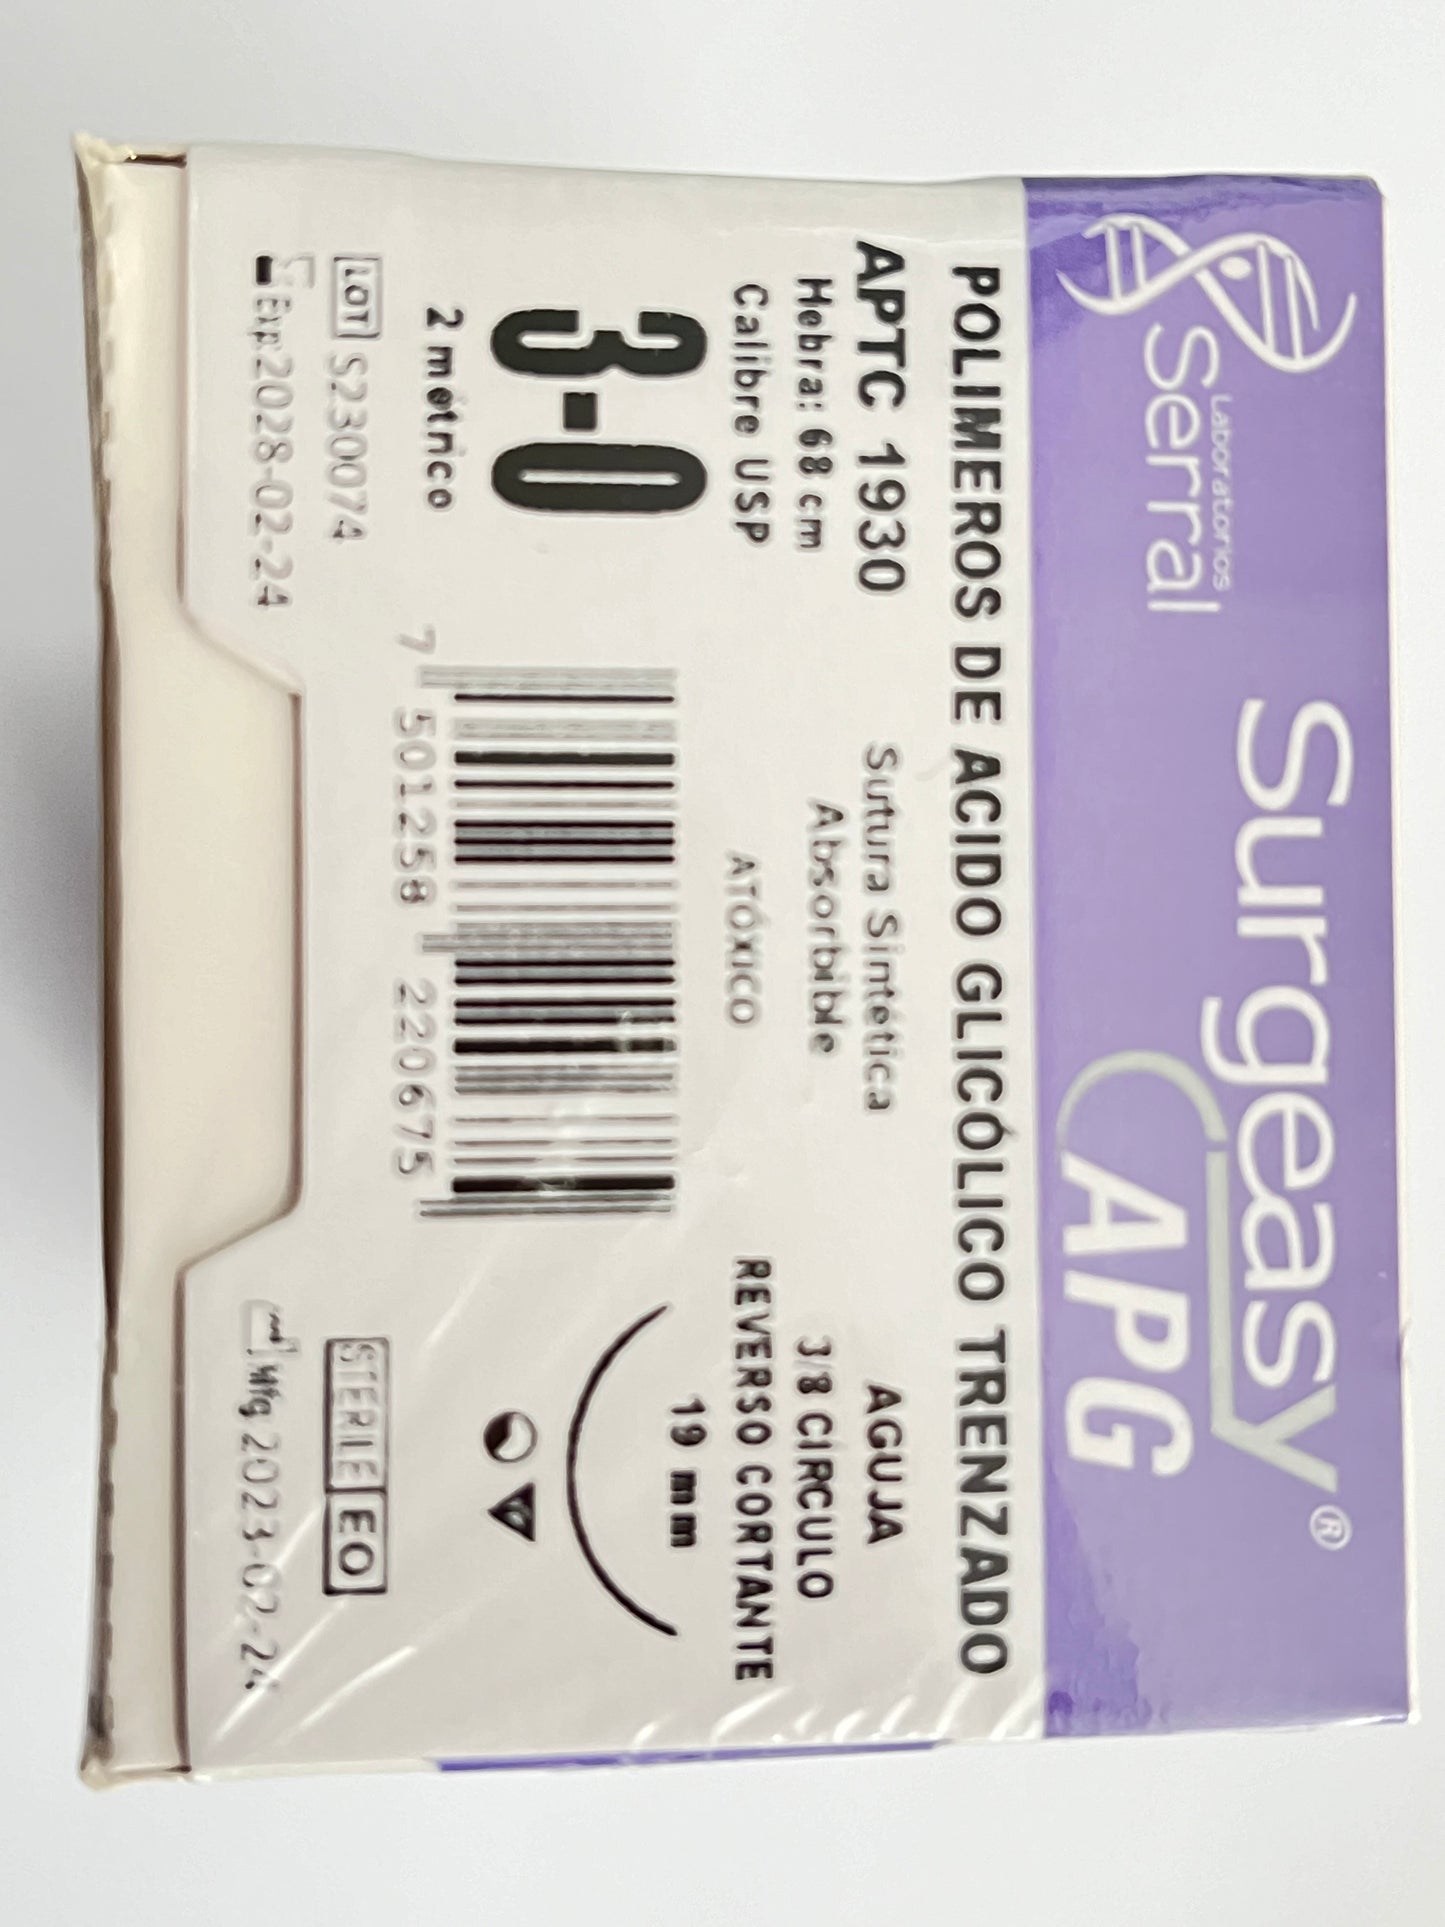 Caja sutura 3-0 ácido glicólico con 12 piezas